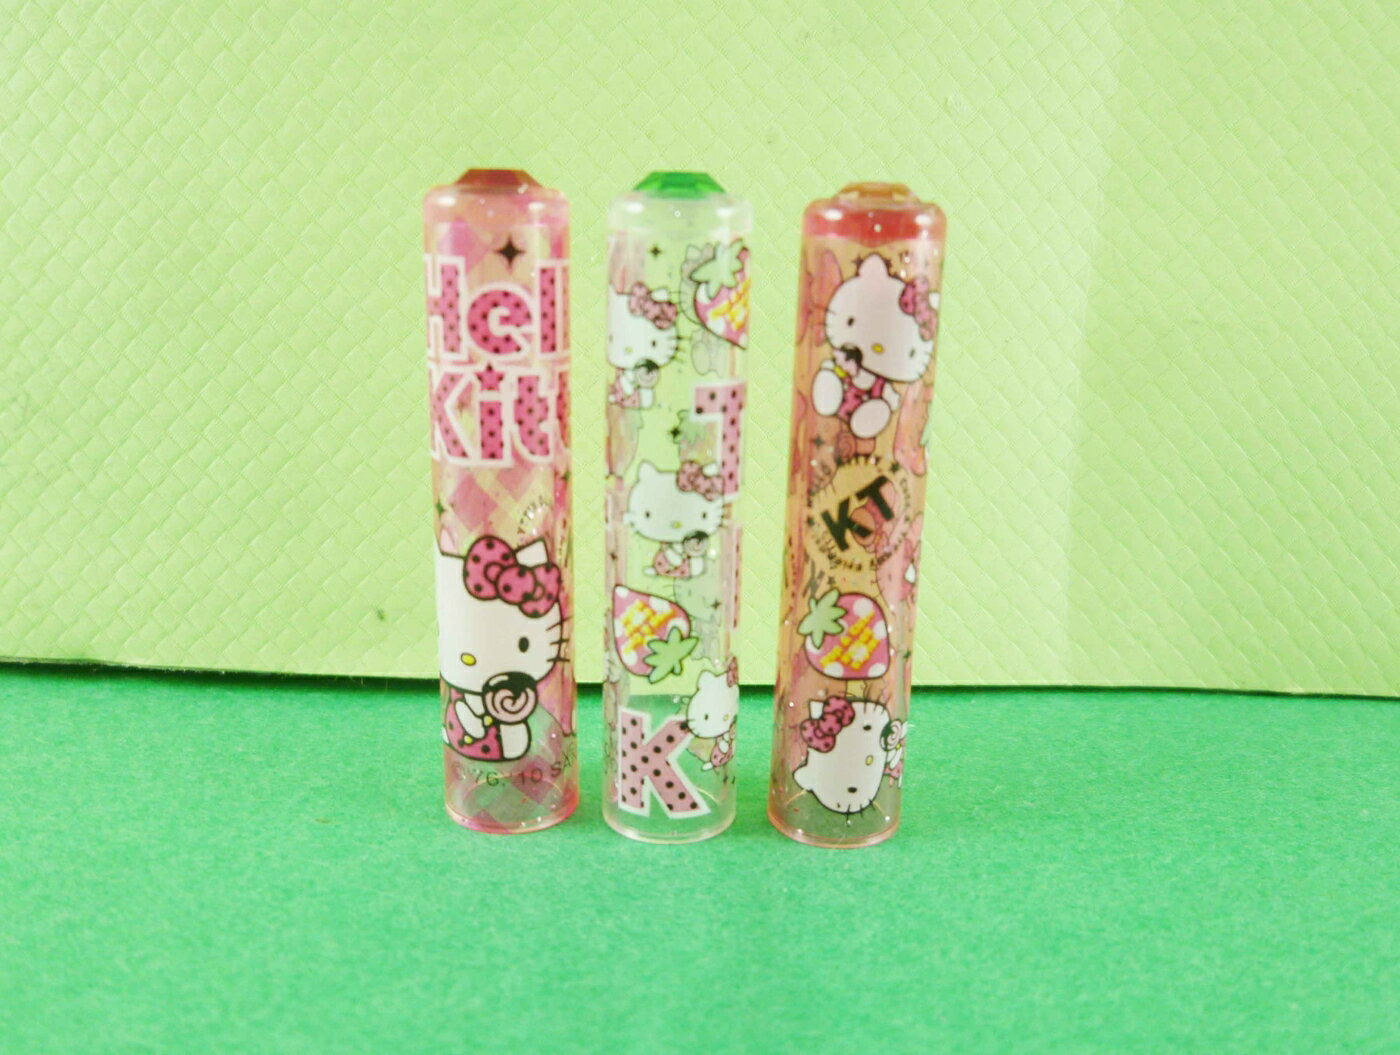 【震撼精品百貨】Hello Kitty 凱蒂貓 鉛筆蓋-3入草莓圖案 震撼日式精品百貨